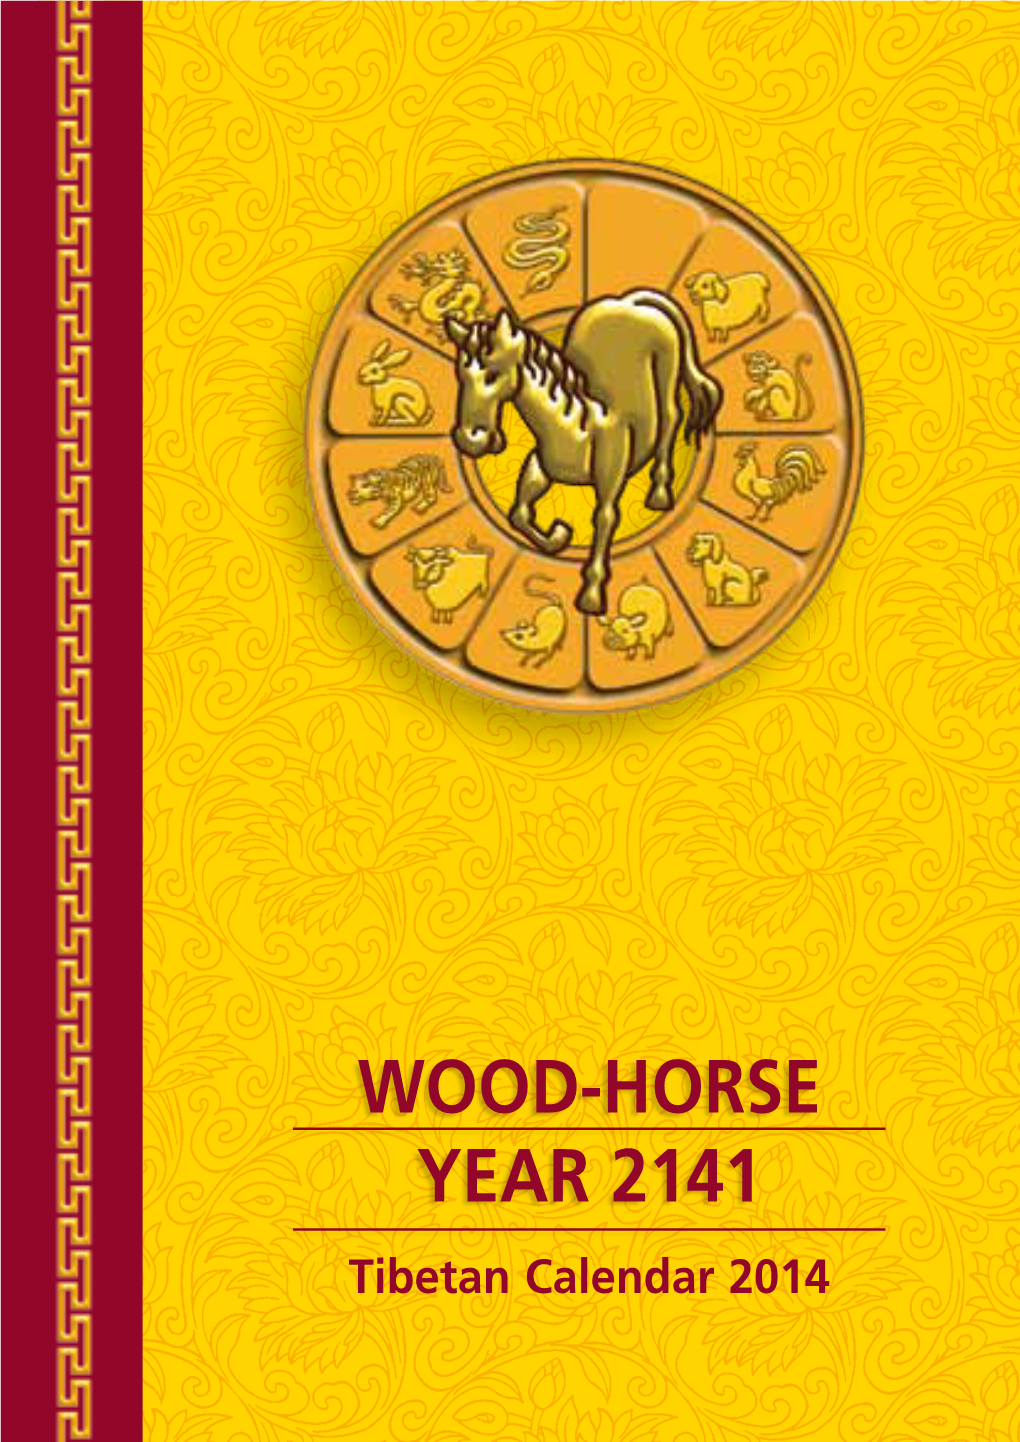 WOOD-HORSE YEAR 2141 Tibetan Calendar 2014 DEAR READER